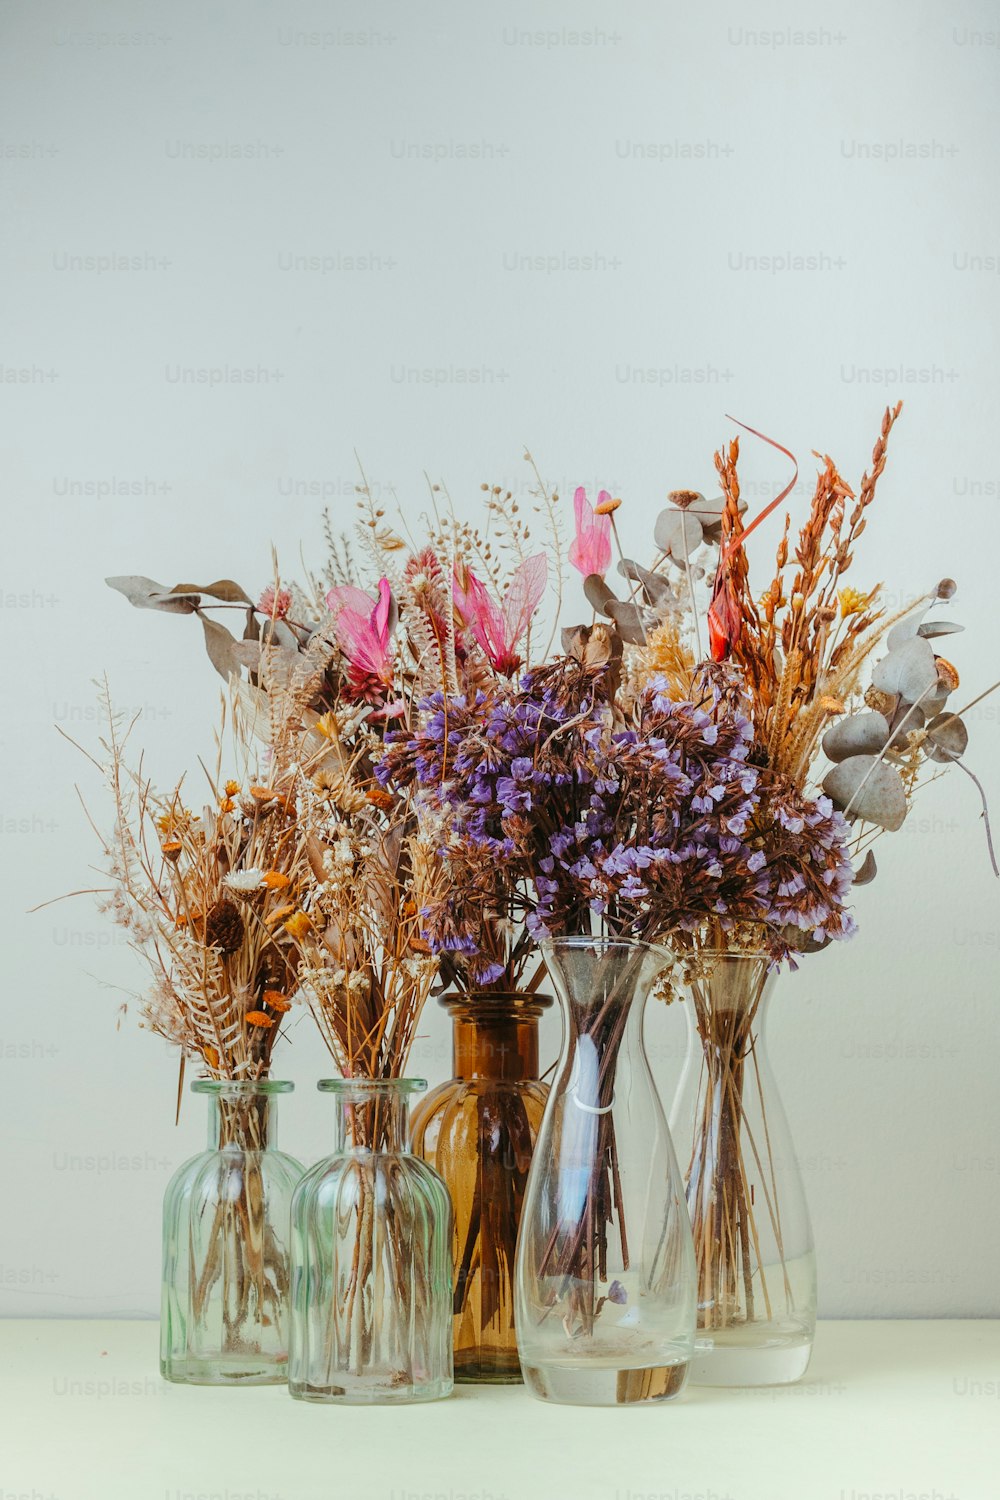 un gruppo di vasi pieni di diversi tipi di fiori